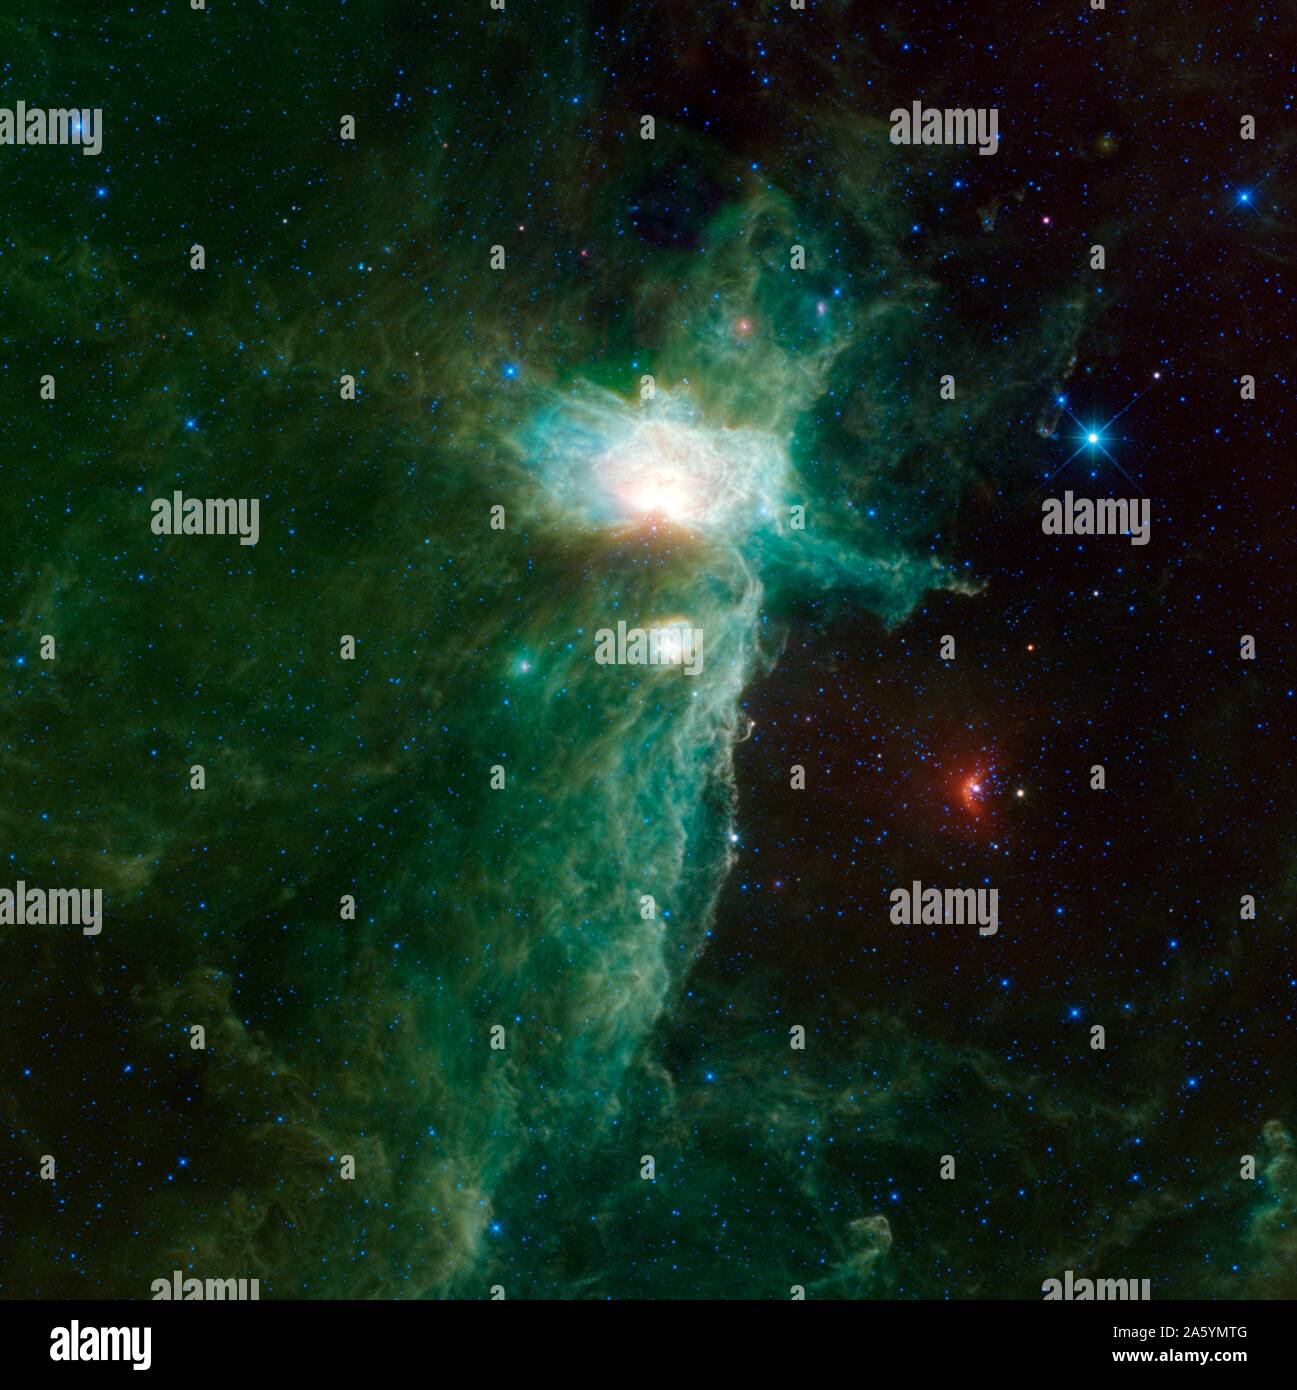 La nébuleuse de la flamme se situe sur la hanche de l'est d'Orion le chasseur, une constellation plus facilement visible dans l'hémisphère nord. Sage. Banque D'Images